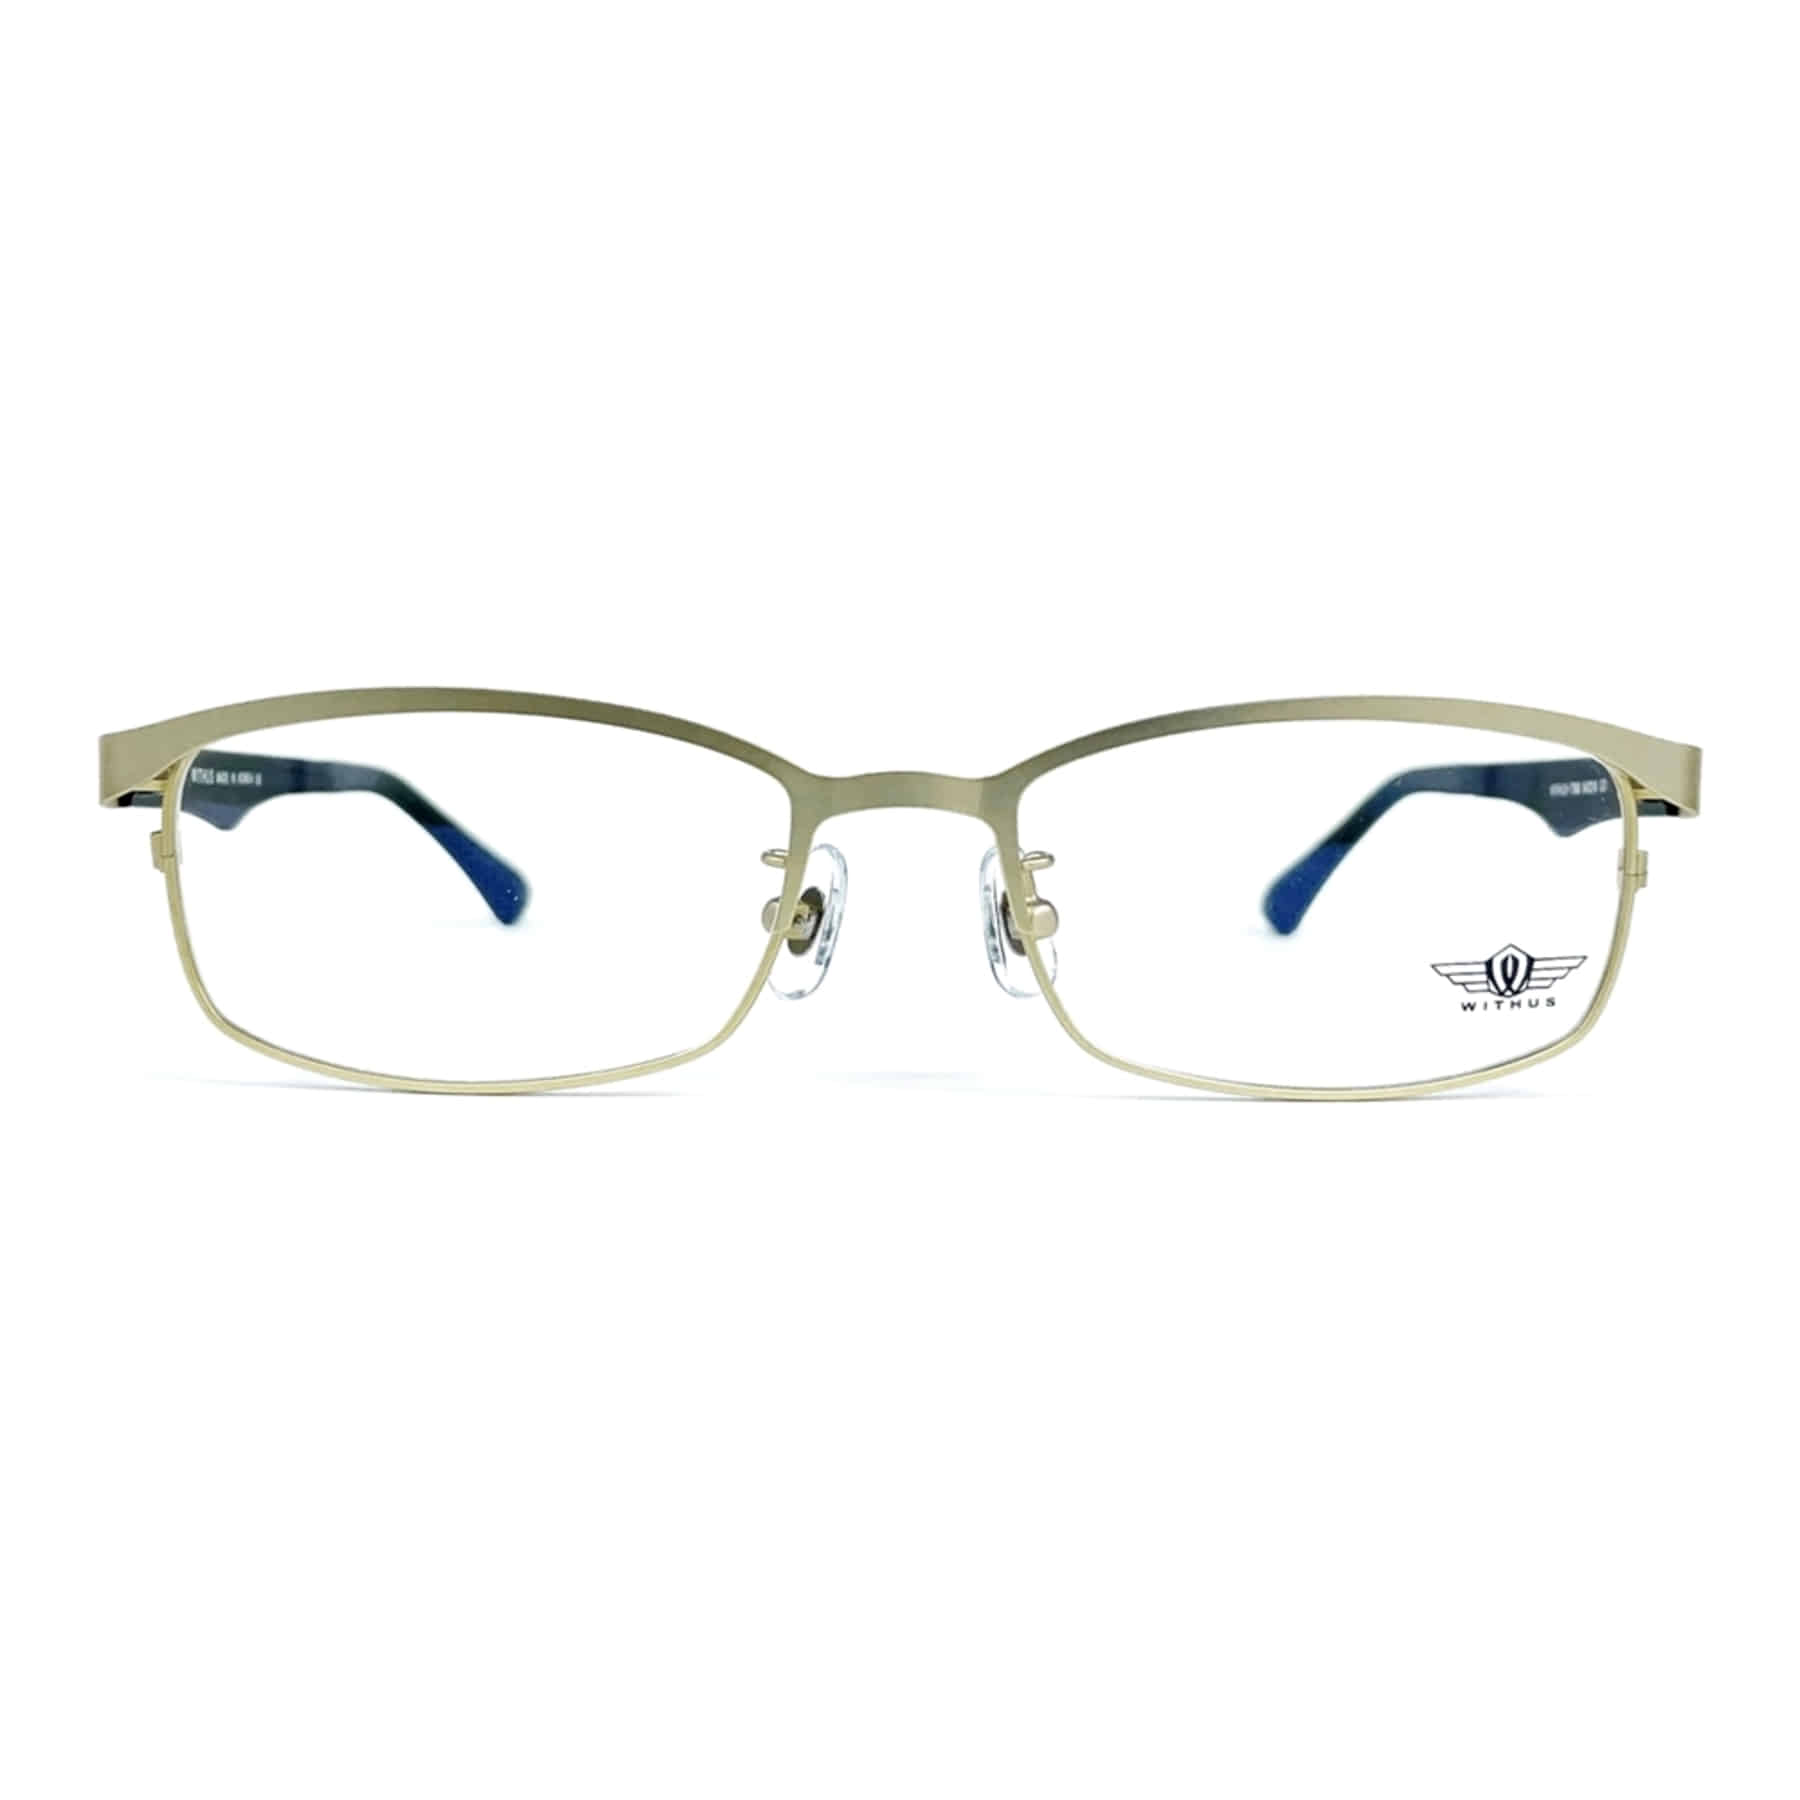 WITHUS-7390, Korean glasses, sunglasses, eyeglasses, glasses